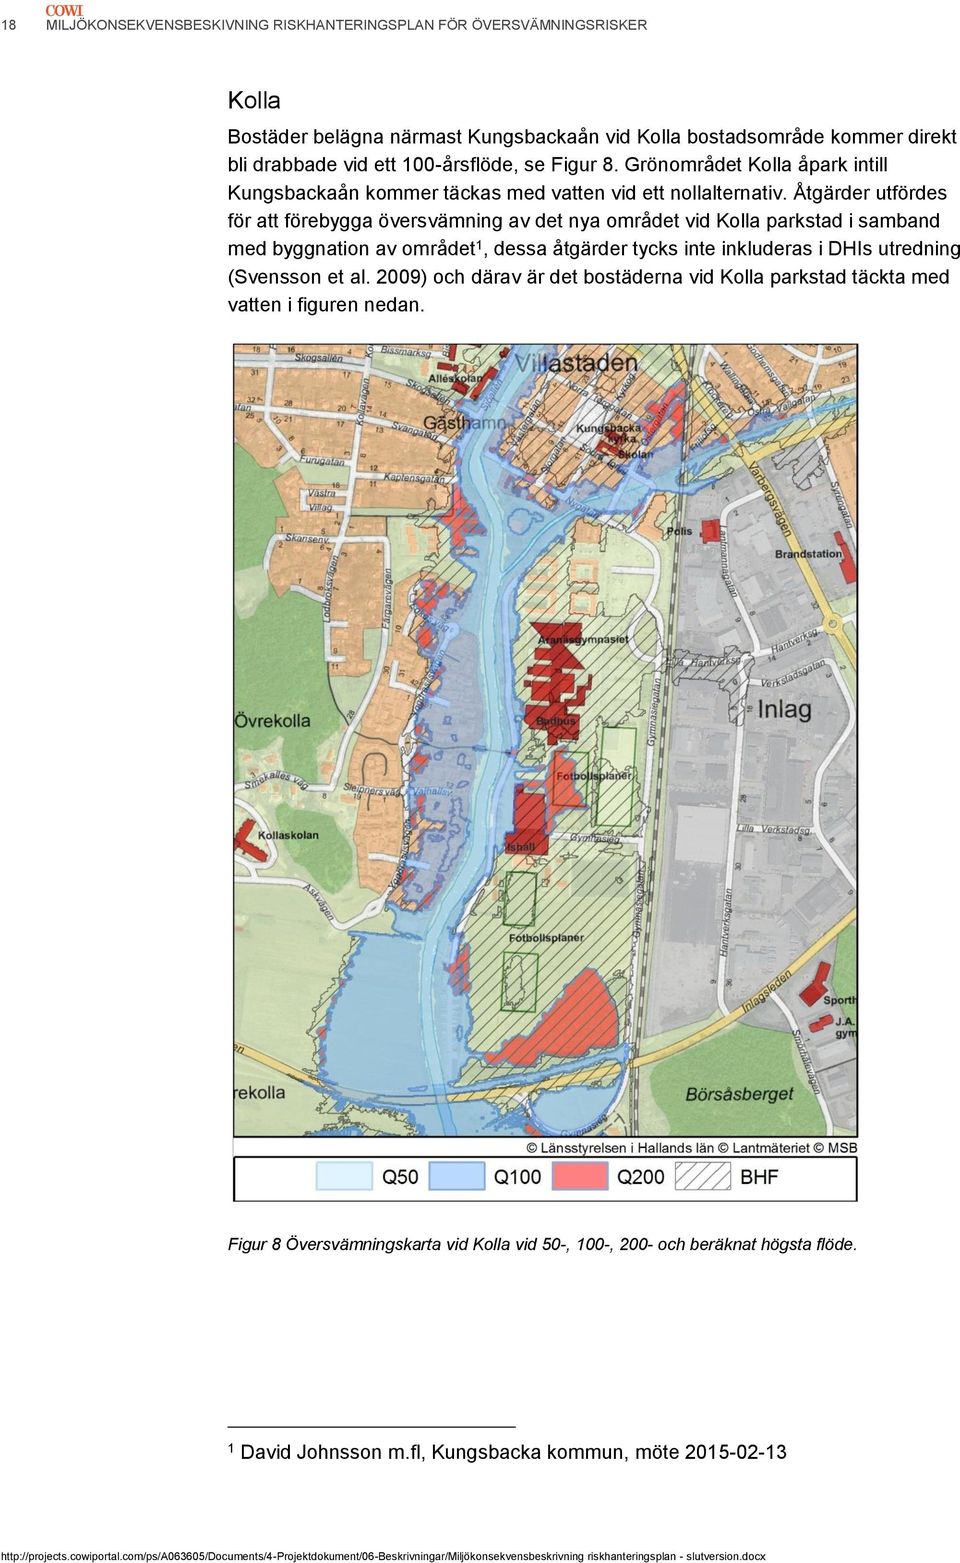 Åtgärder utfördes för att förebygga översvämning av det nya området vid Kolla parkstad i samband med byggnation av området 1, dessa åtgärder tycks inte inkluderas i DHIs utredning